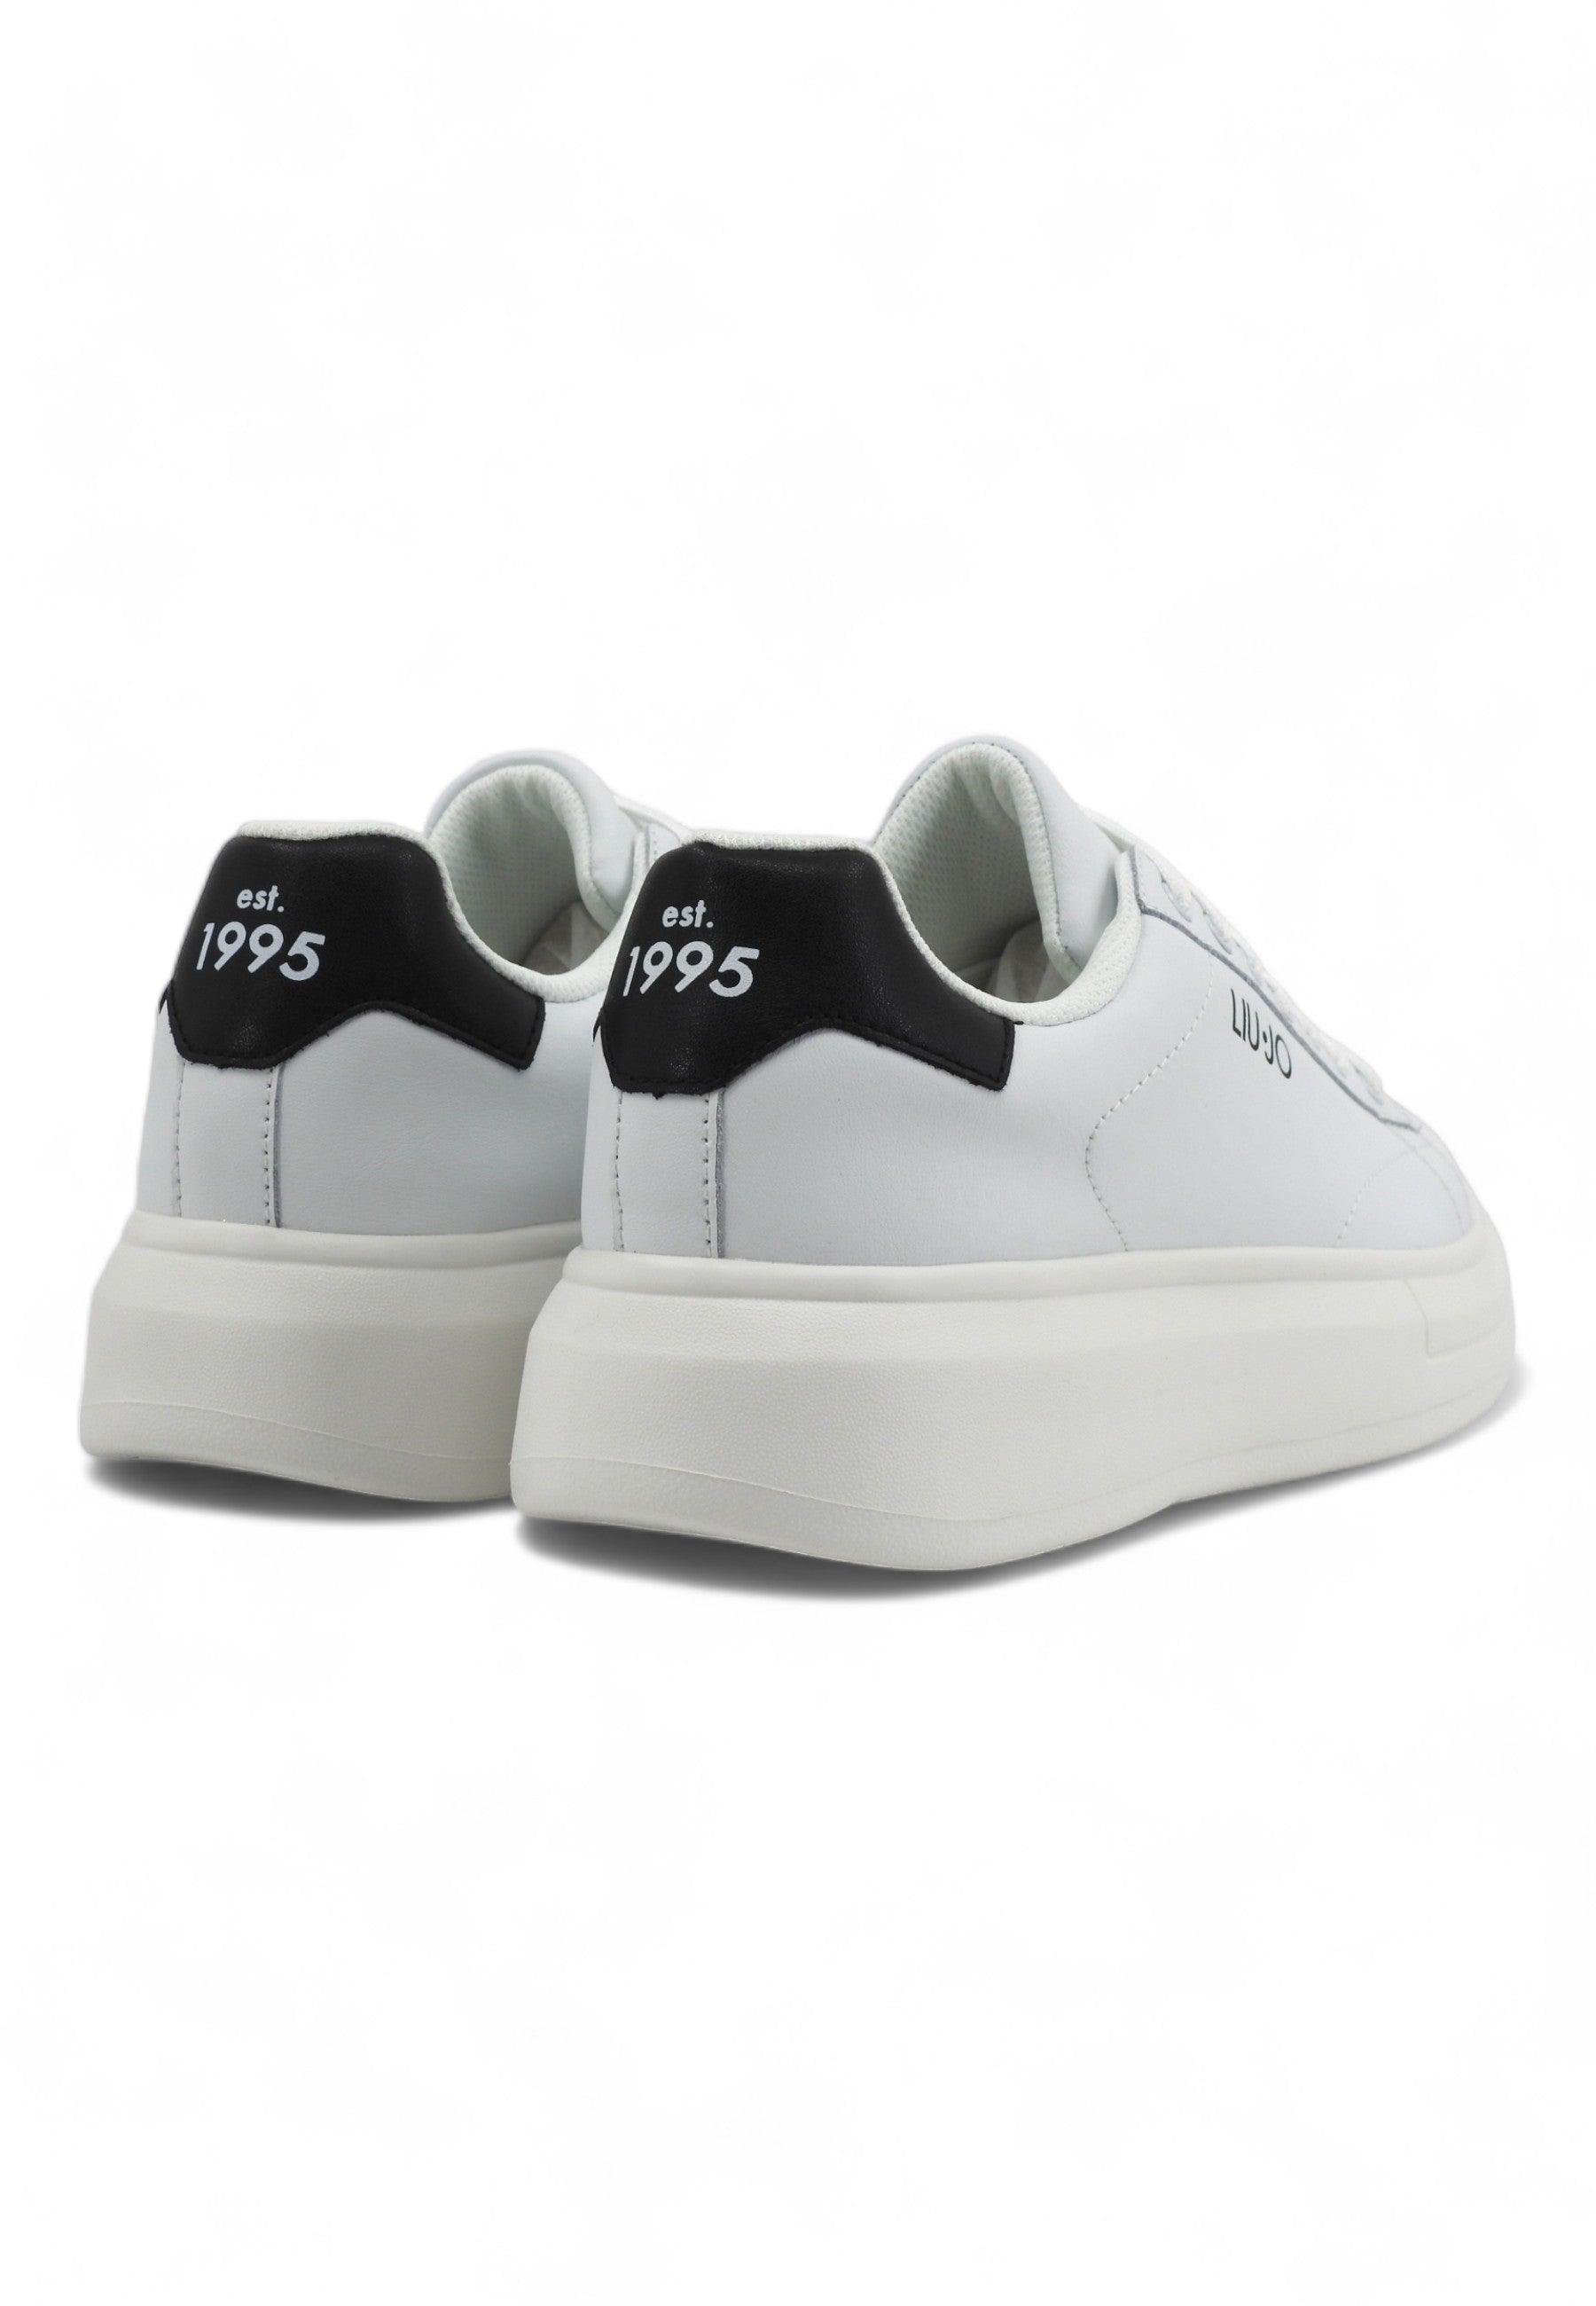 LIU JO Big 01 Sneaker Uomo White Black 7B4027-PX474 - Sandrini Calzature e Abbigliamento